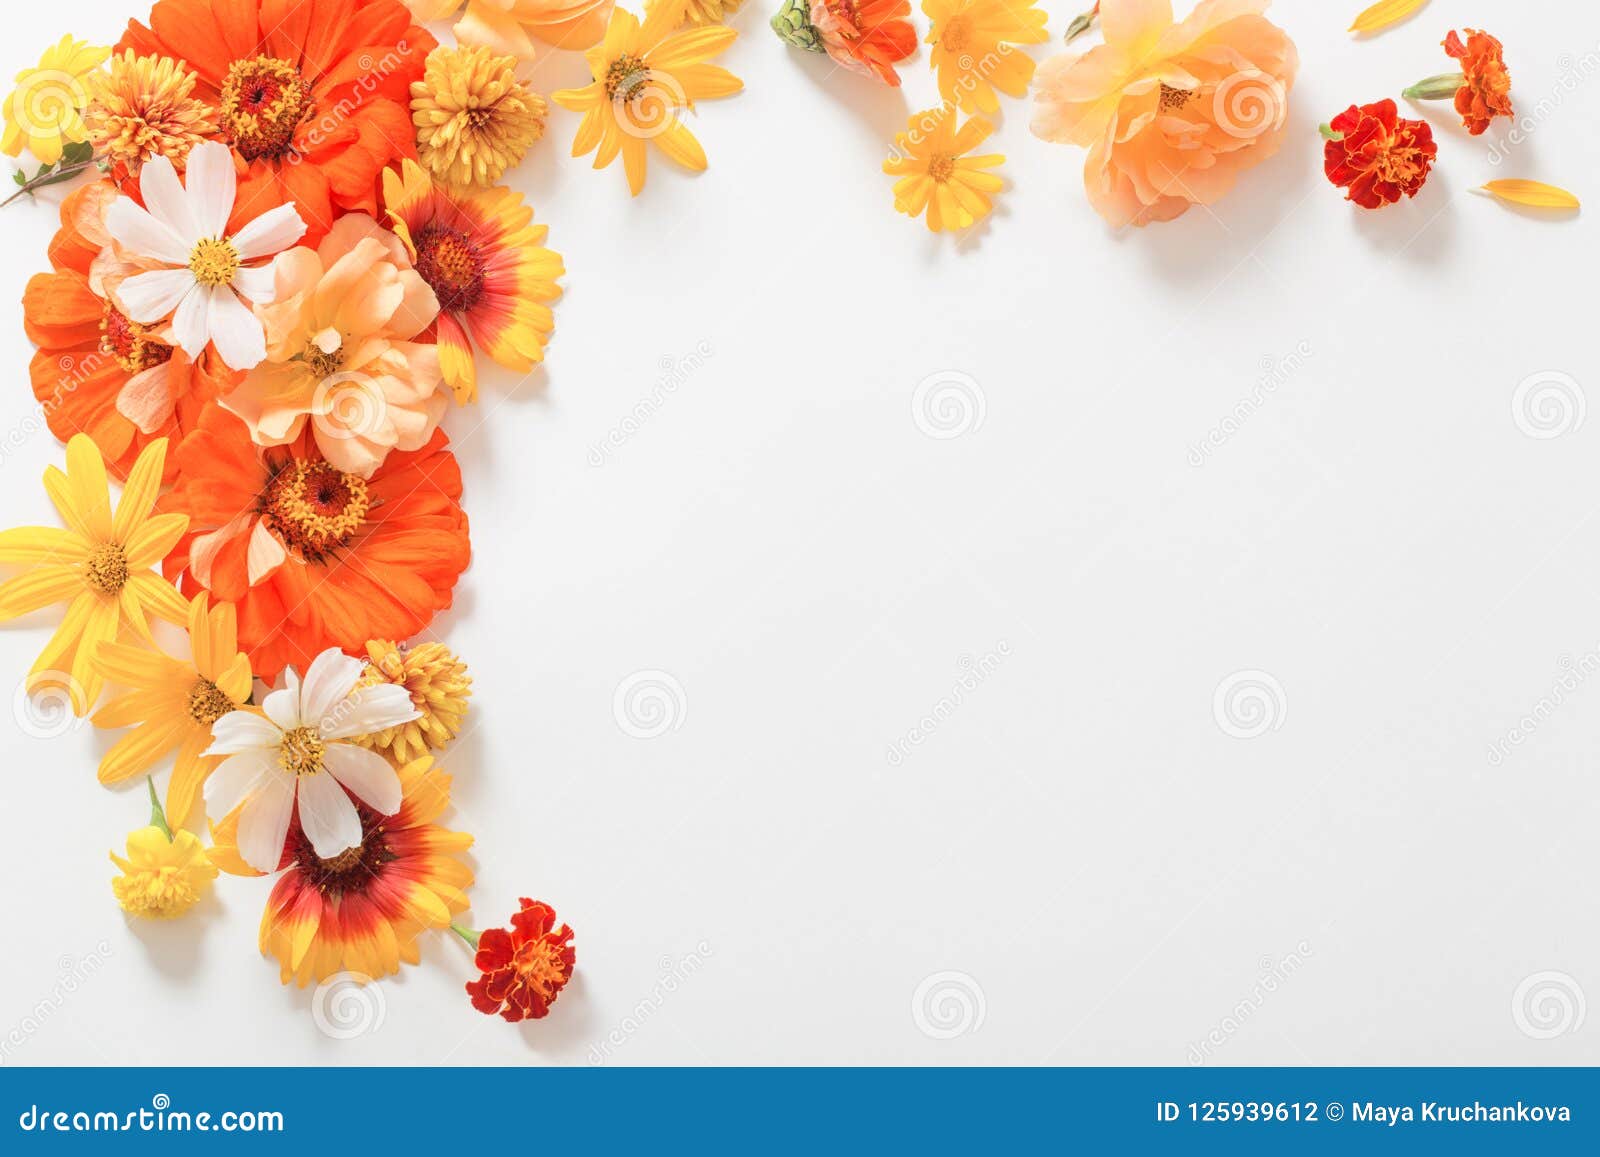 Hãy chiêm ngưỡng ảnh đồng nghĩa với hoa vàng và hoa cam trên nền trắng, tạo nên một bức tranh tuyệt đẹp cùng sắc màu tươi sáng thiên nhiên. Thật tuyệt vời khi được đắm mình trong vẻ đẹp của hoa vàng và hoa cam đầy sức sống.